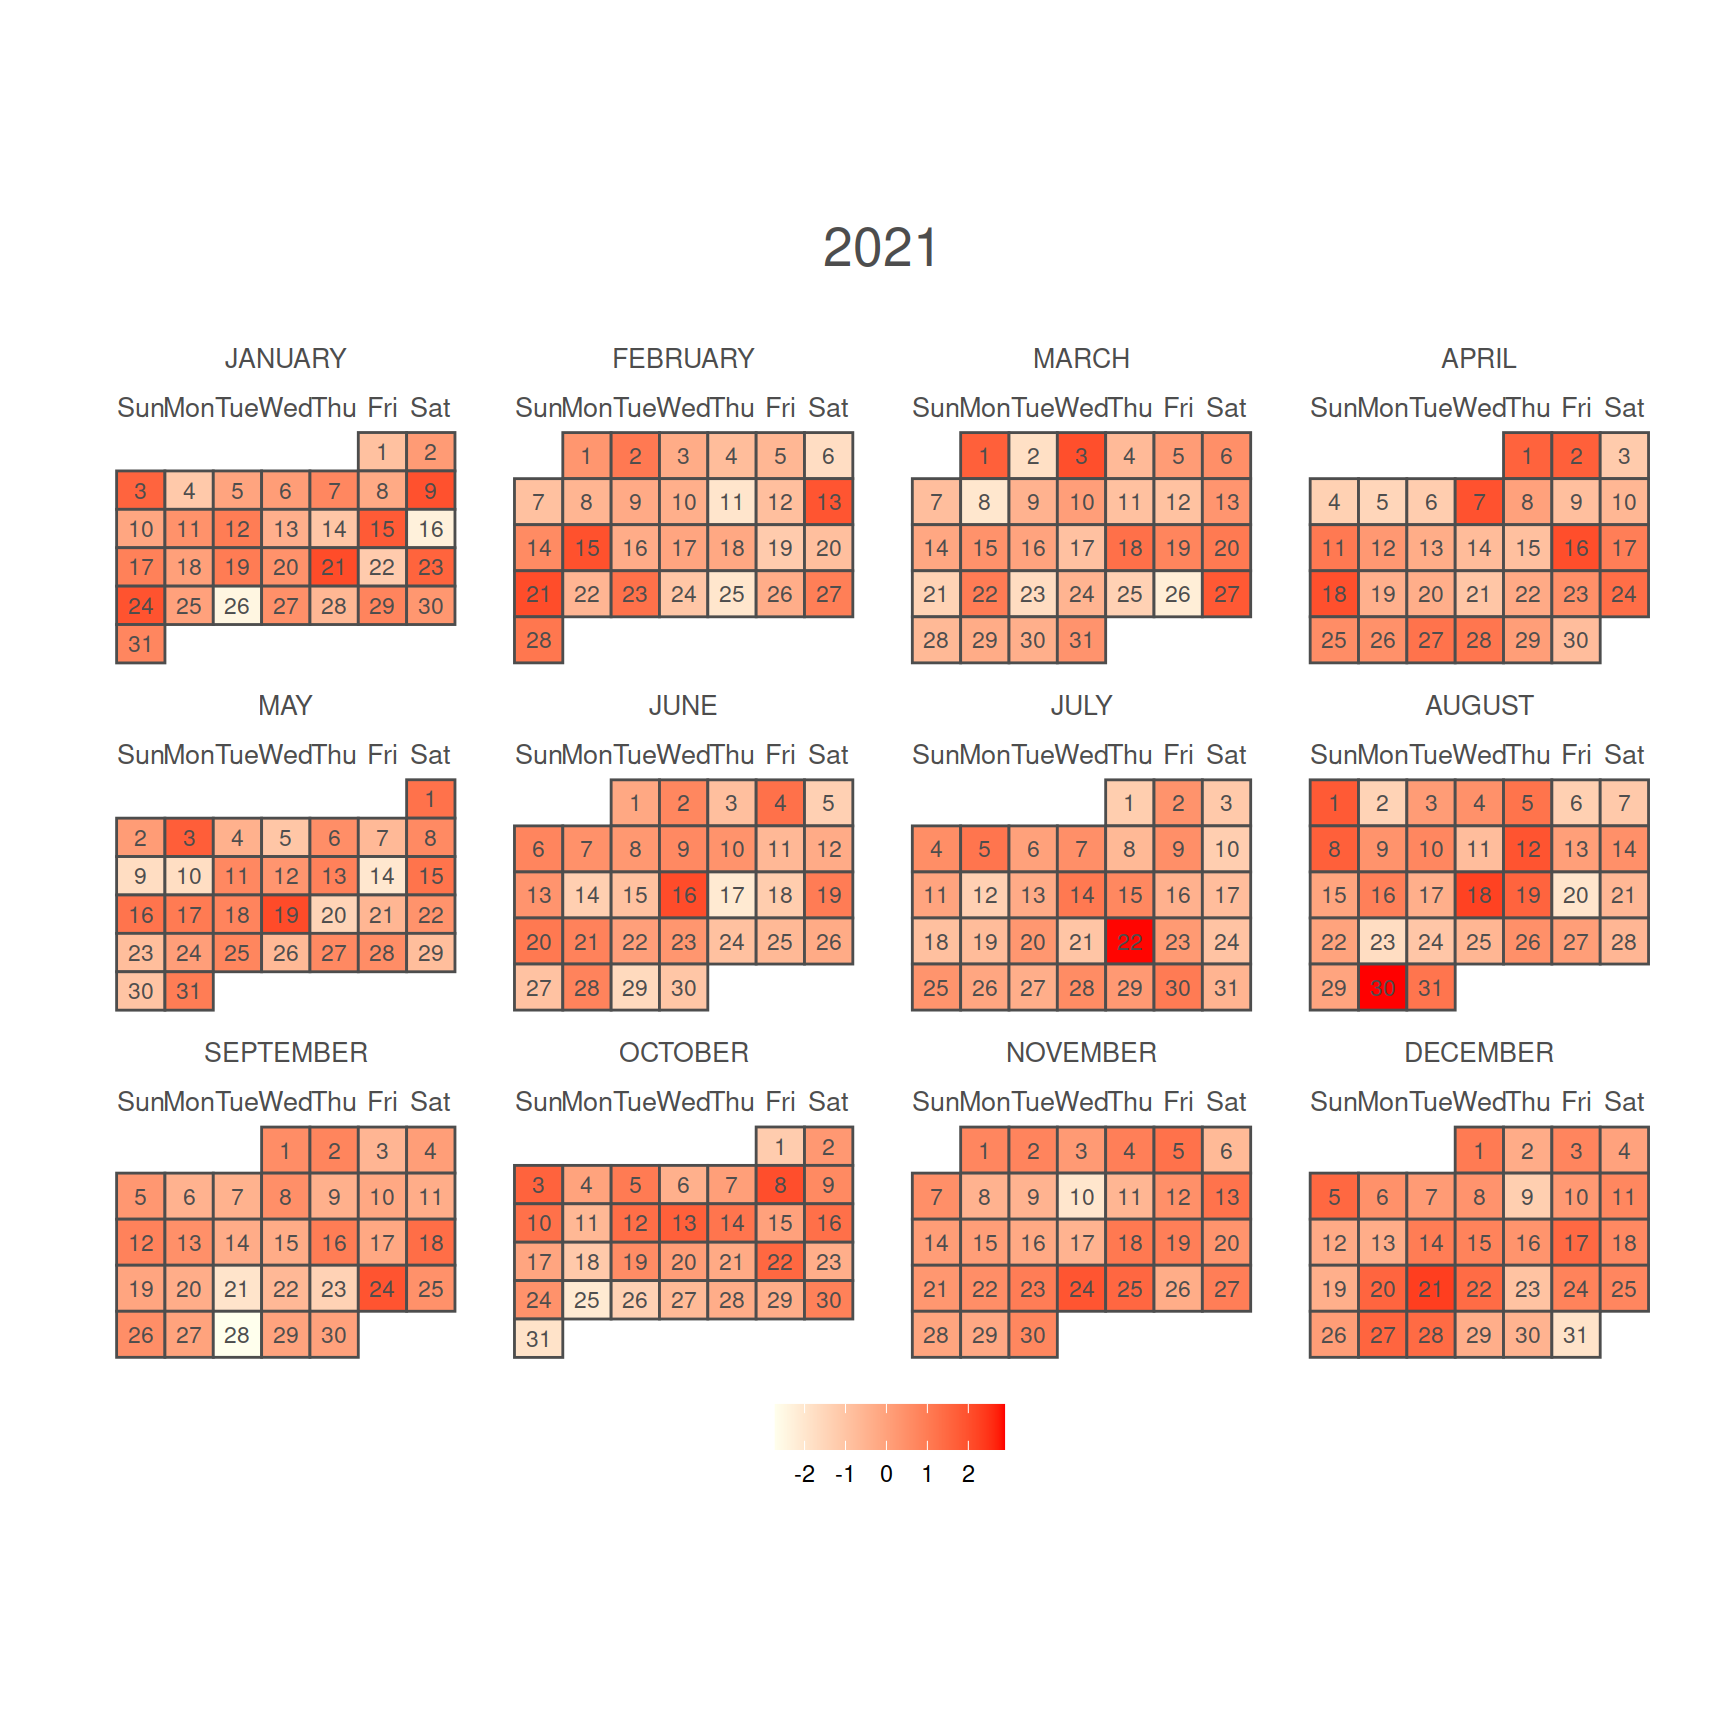 Calendario anual como mapa de calor en R